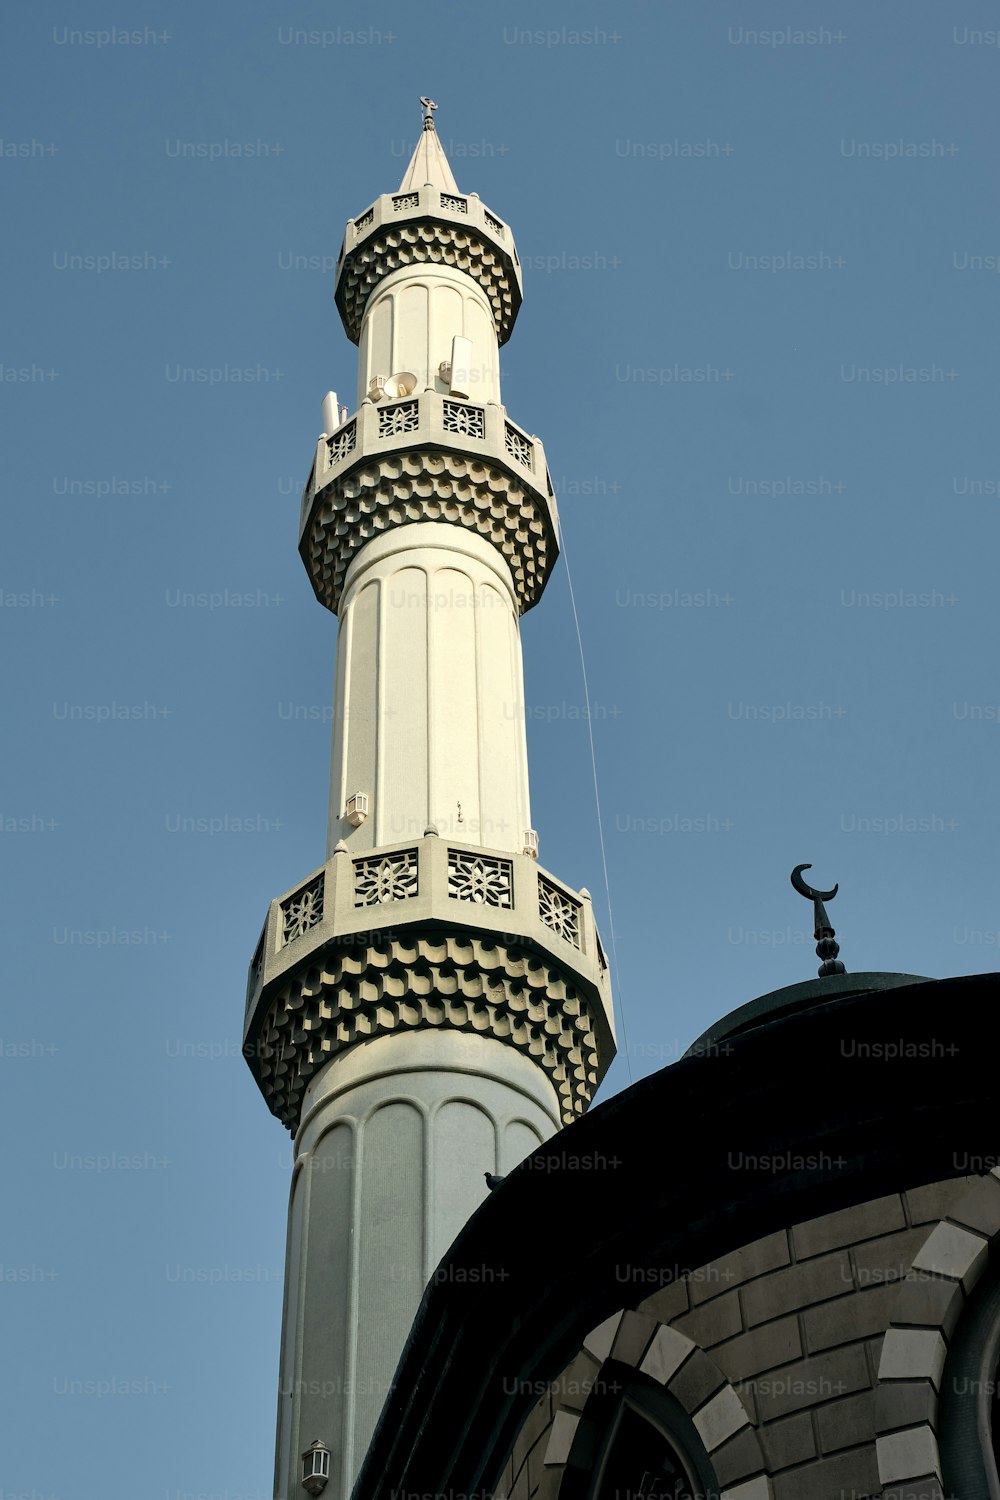 Un'inquadratura dal basso di un minareto di una moschea contro un cielo blu in una giornata di sole a Dubai